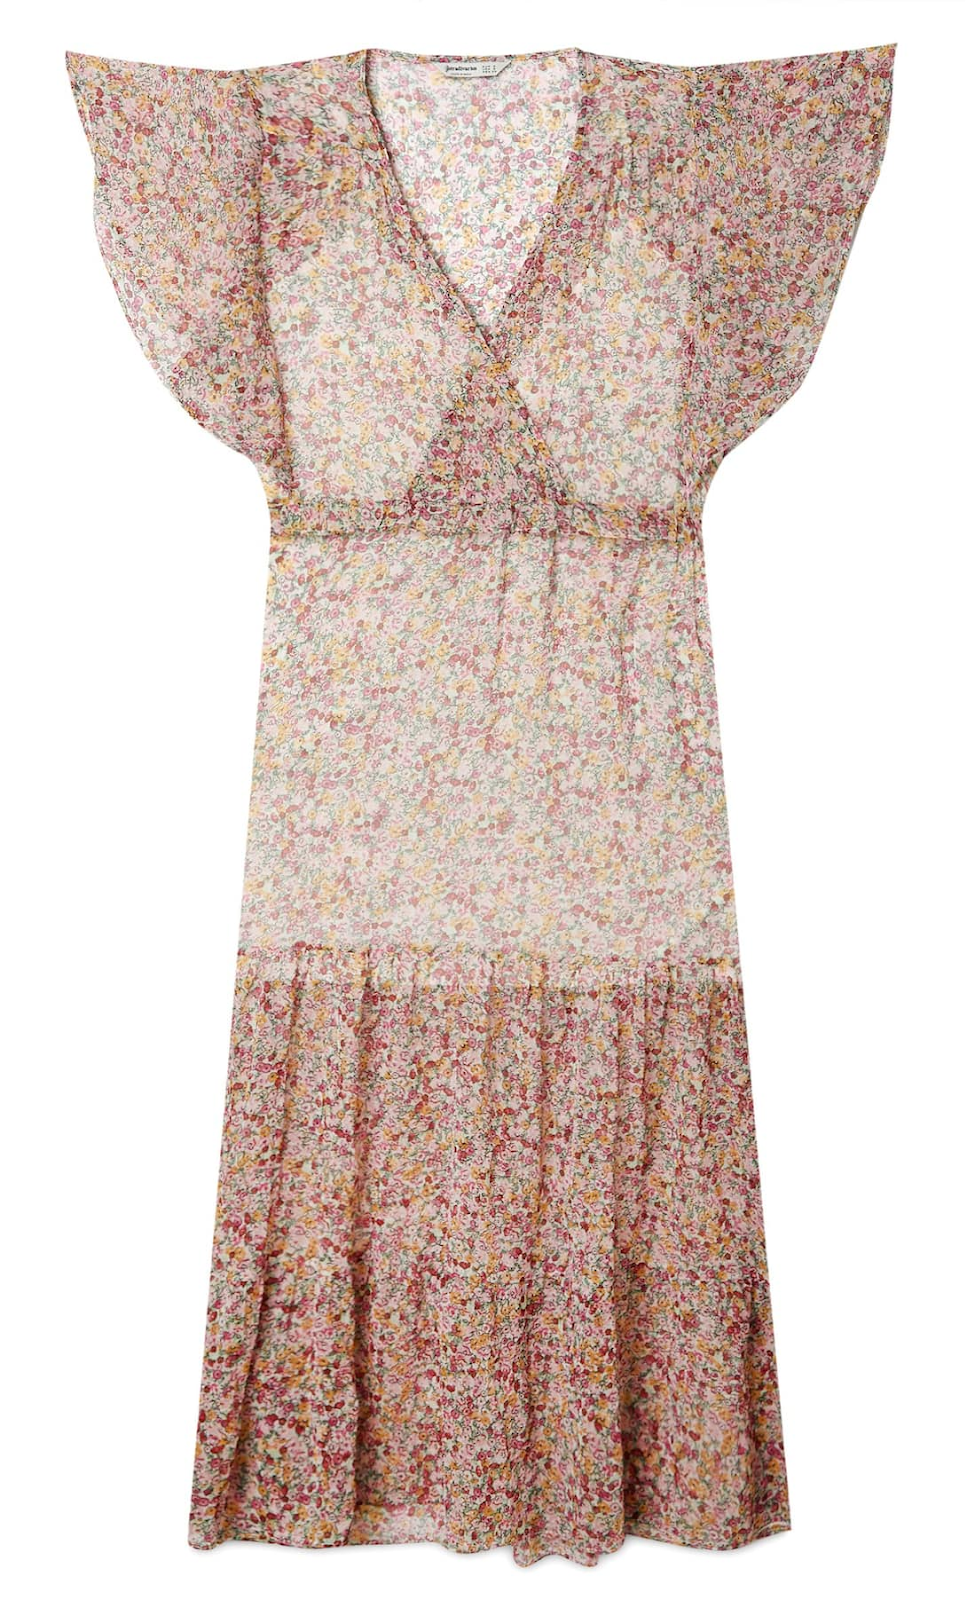 Vestido de verano de mujer, largo y con estampado floral, disponible en la tienda Stradivarius